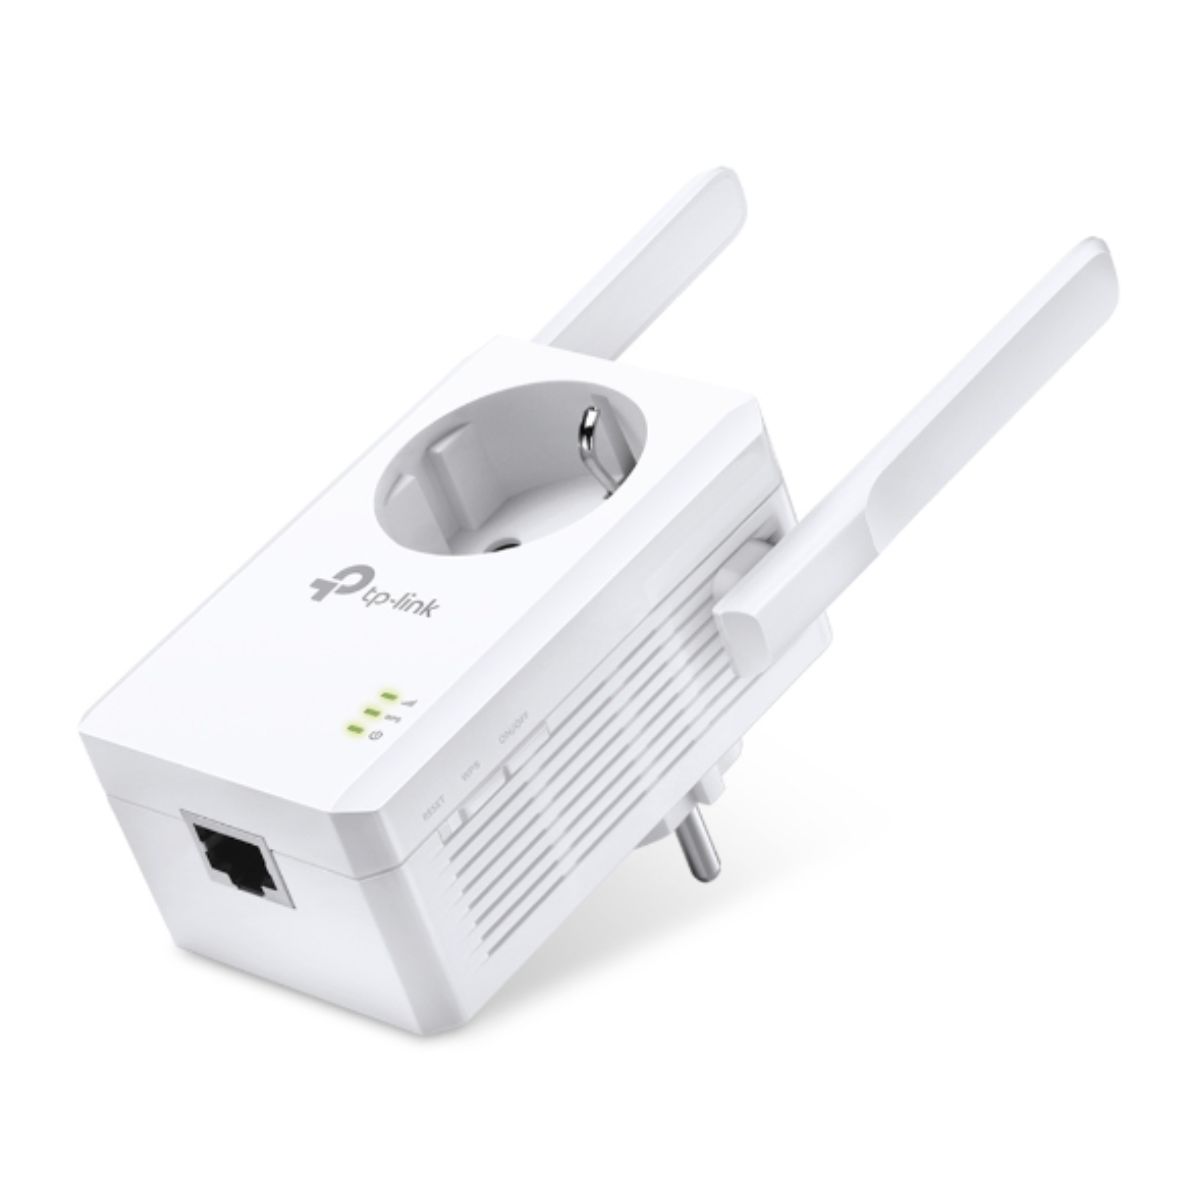 Bộ mở rộng sóng wifi TP-Link TL-WA860RE tốc độ 300Mbps trên băng tần 2.4GHz, 2 ăng-ten cố định